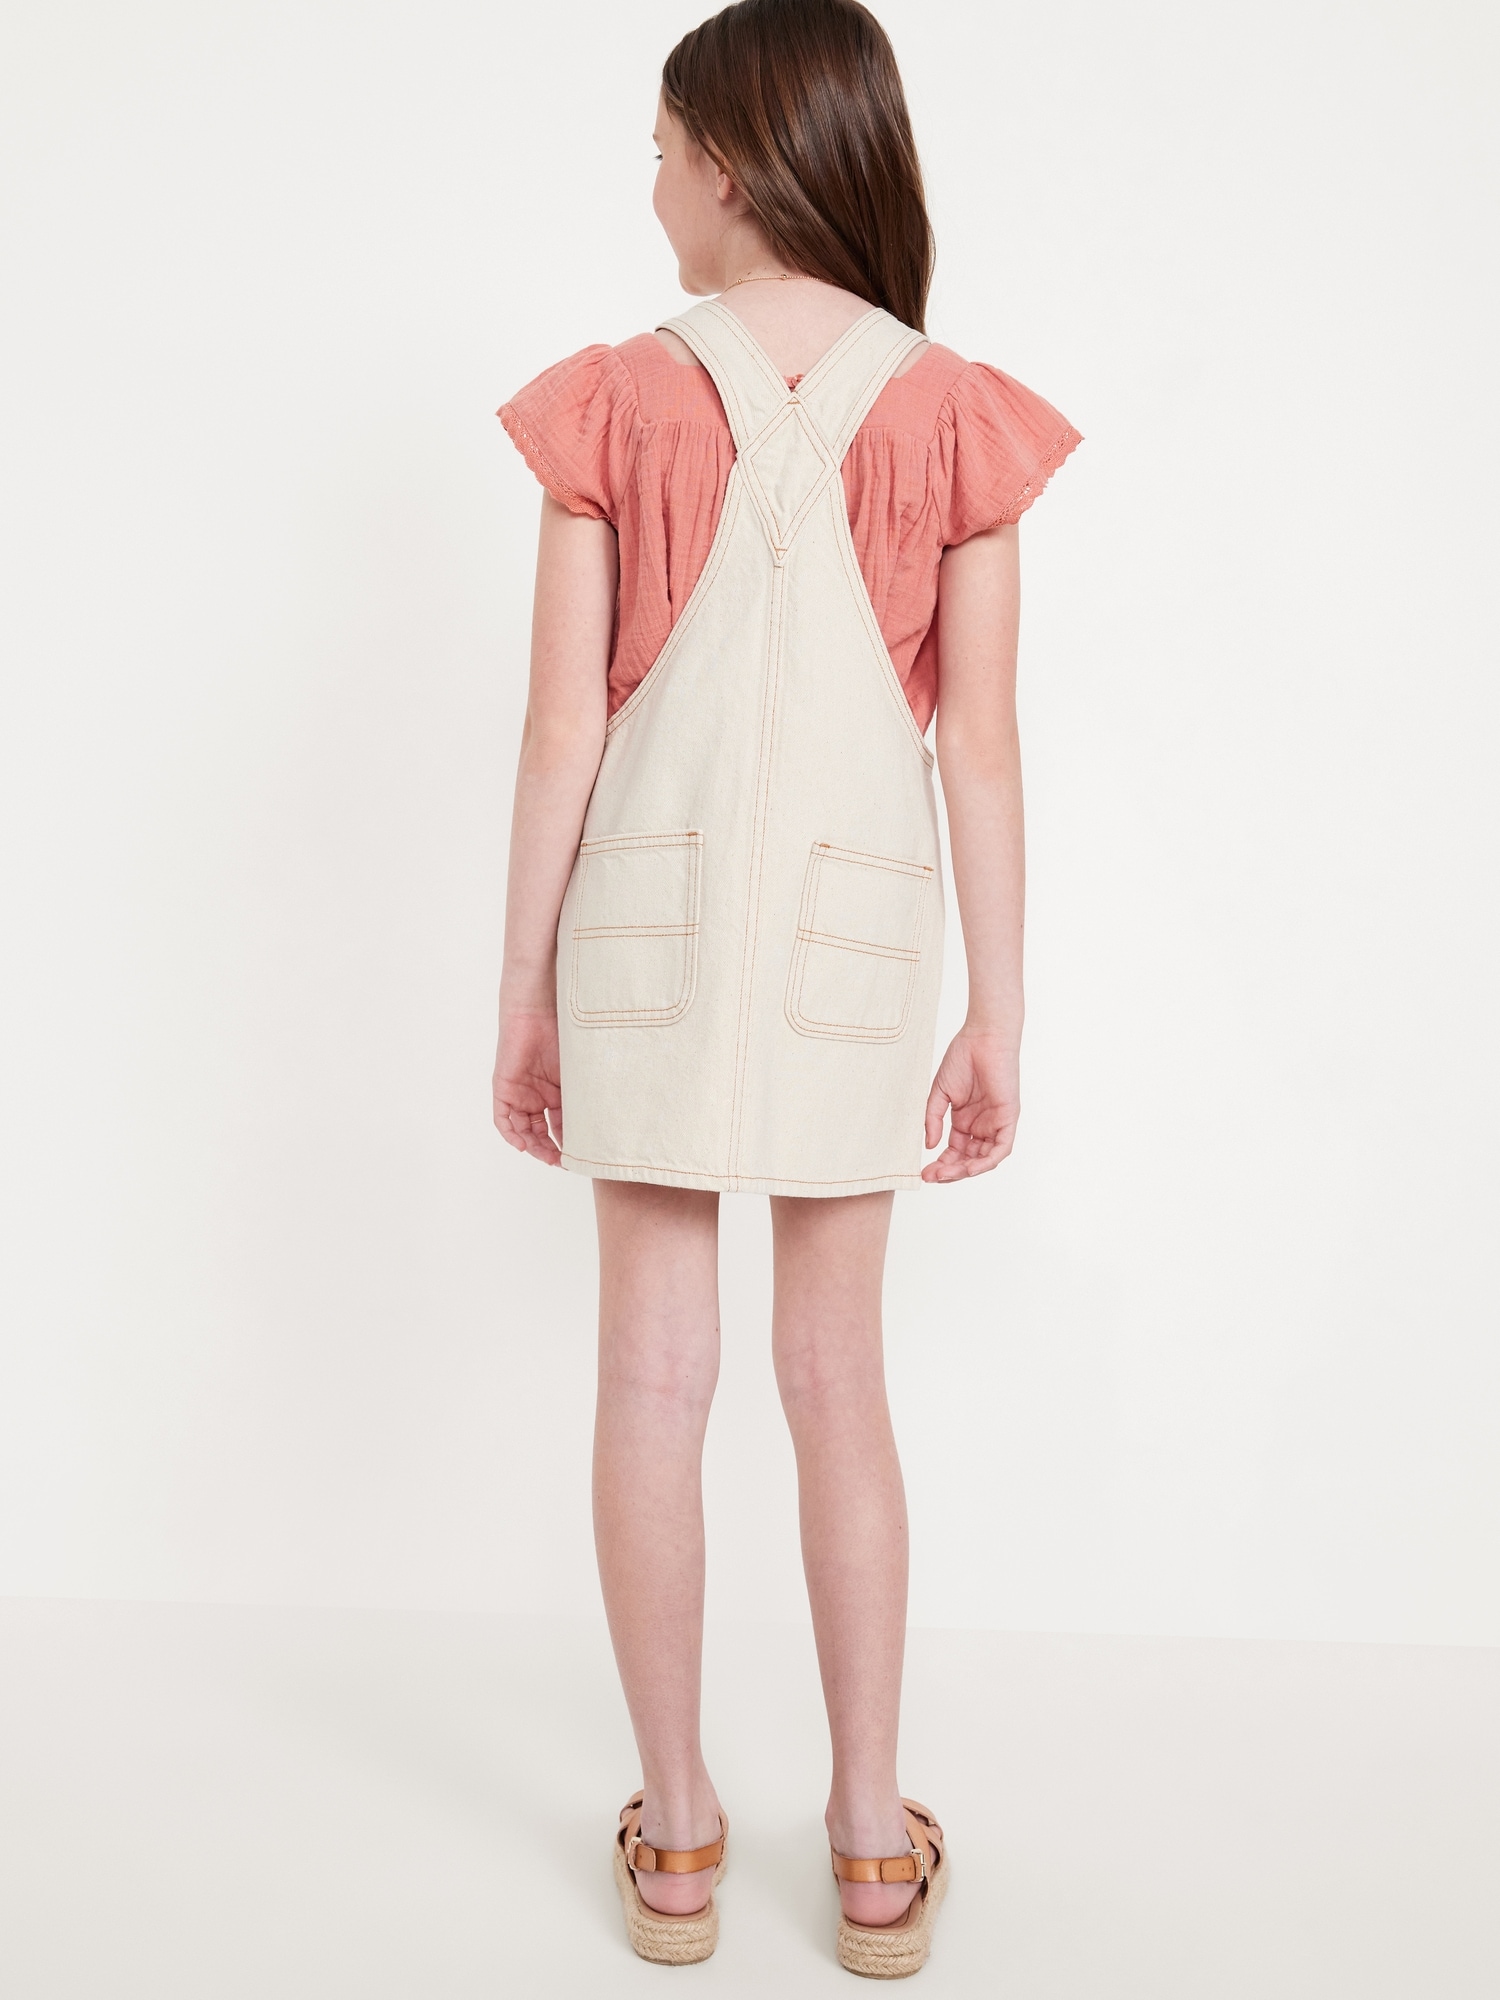 Zip-Front Pocket Skirtall Dress for Girls